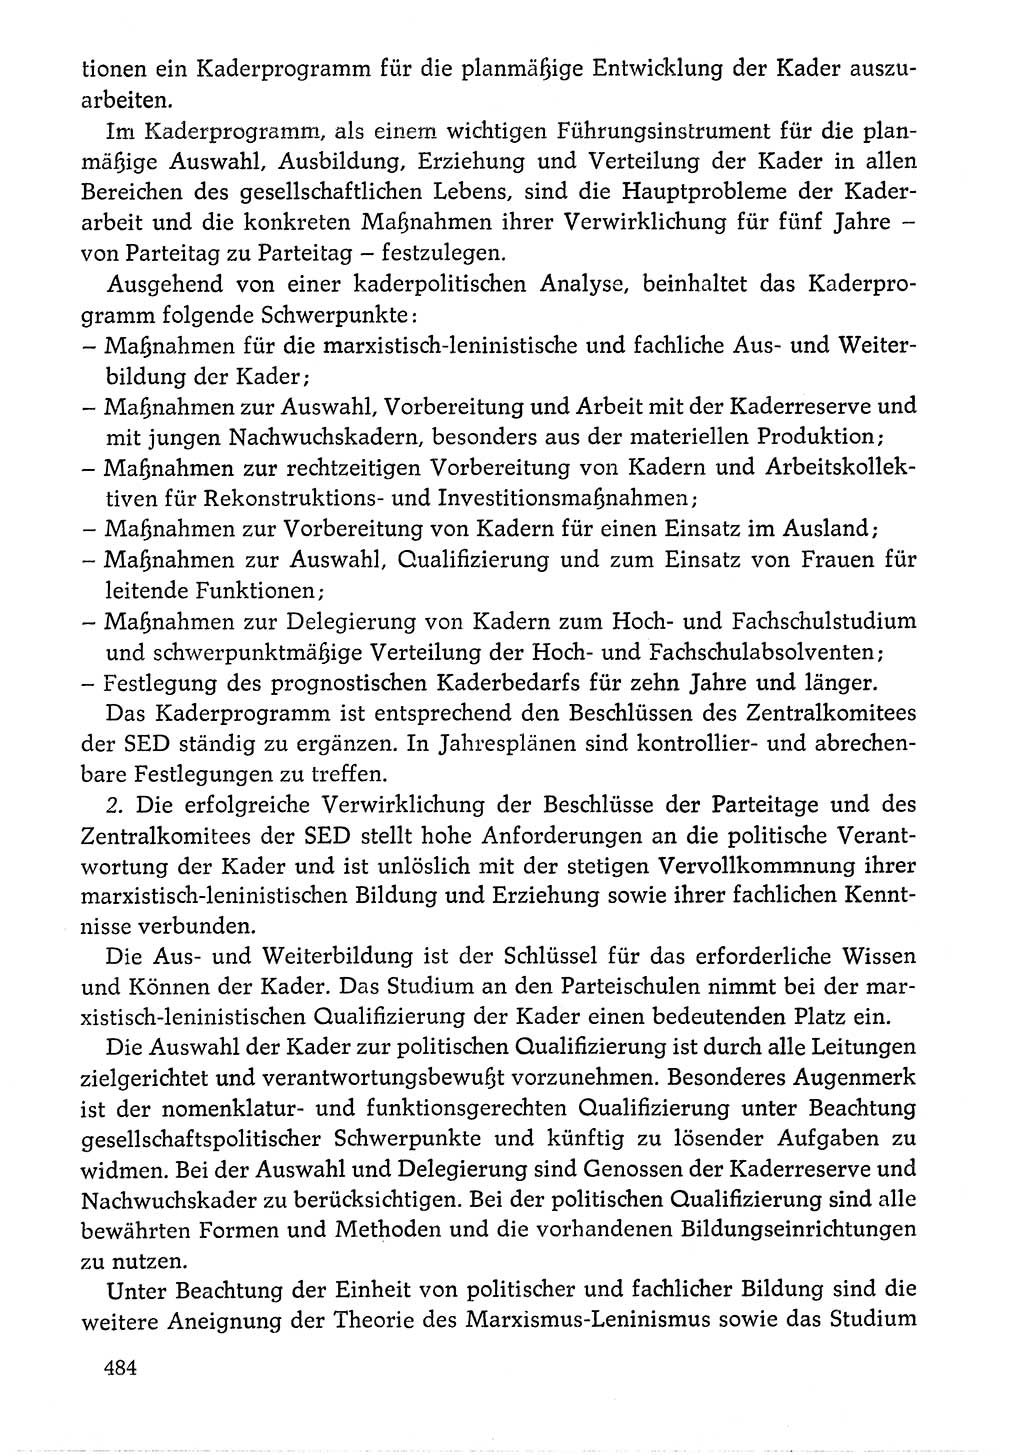 Dokumente der Sozialistischen Einheitspartei Deutschlands (SED) [Deutsche Demokratische Republik (DDR)] 1976-1977, Seite 484 (Dok. SED DDR 1976-1977, S. 484)